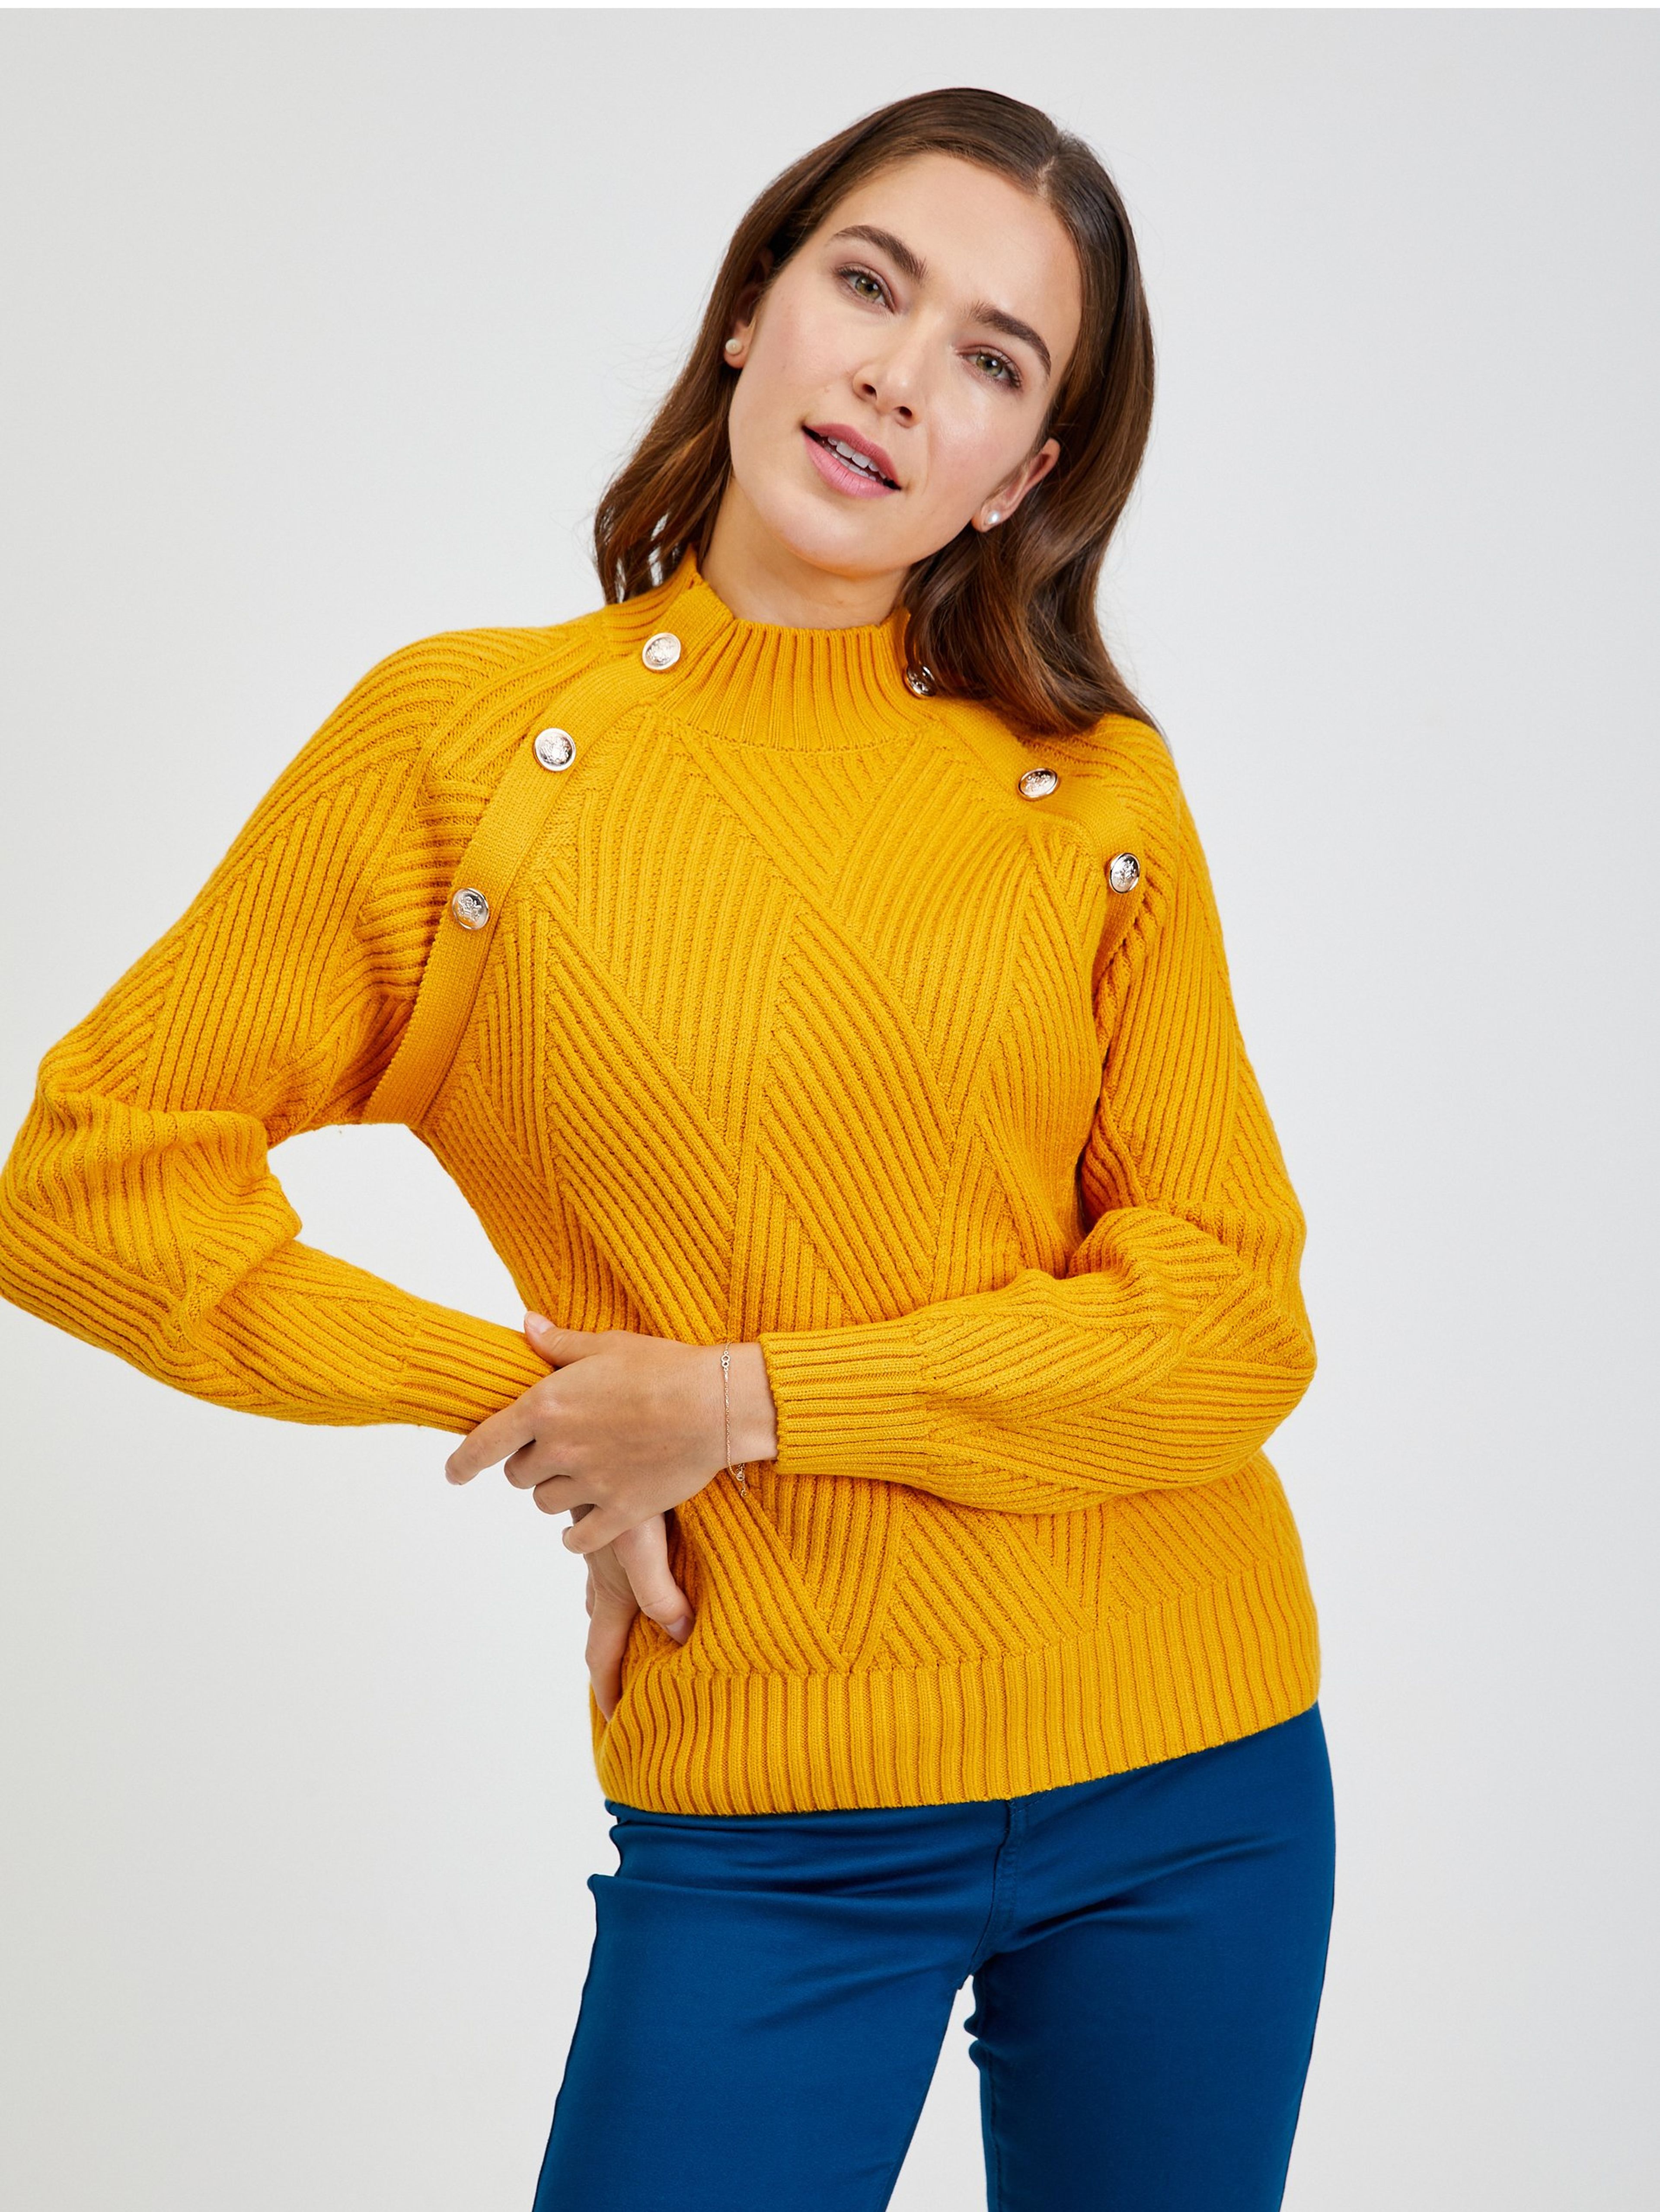 Žlutý dámský žebrovaný svetr s ozdobnými knoflíky ORSAY